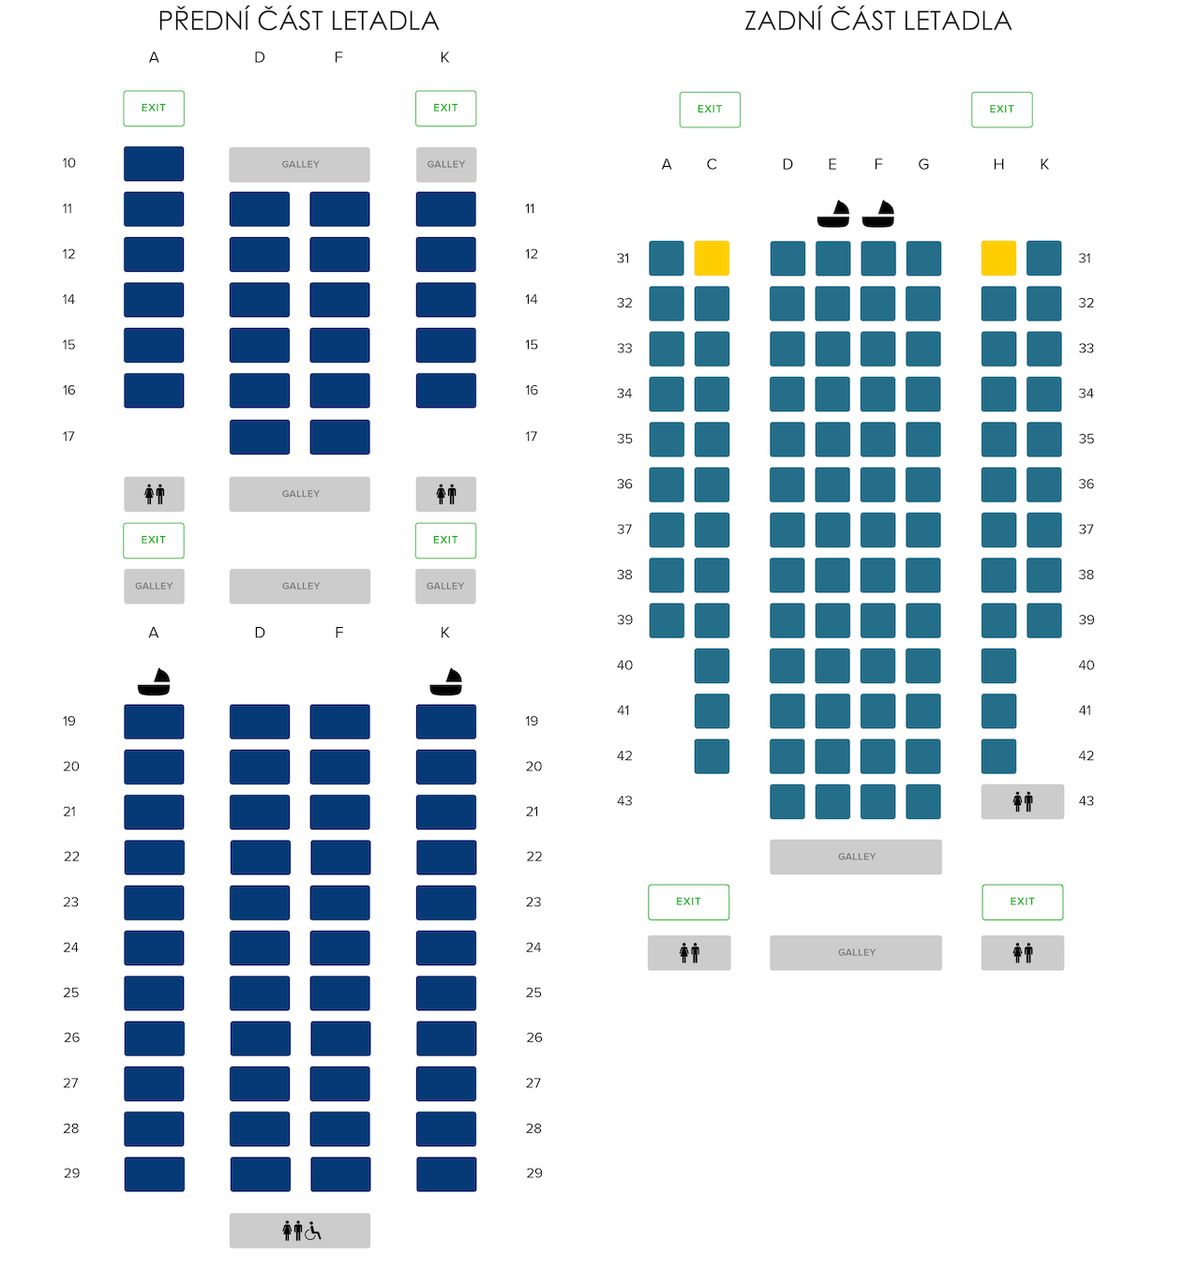 Většinu prostoru v letadle zabírá business class v přední straně letadla. Premium economy se nachází vzadu, s rozložením sedaček 2-4-2, respektive 1-4-1.